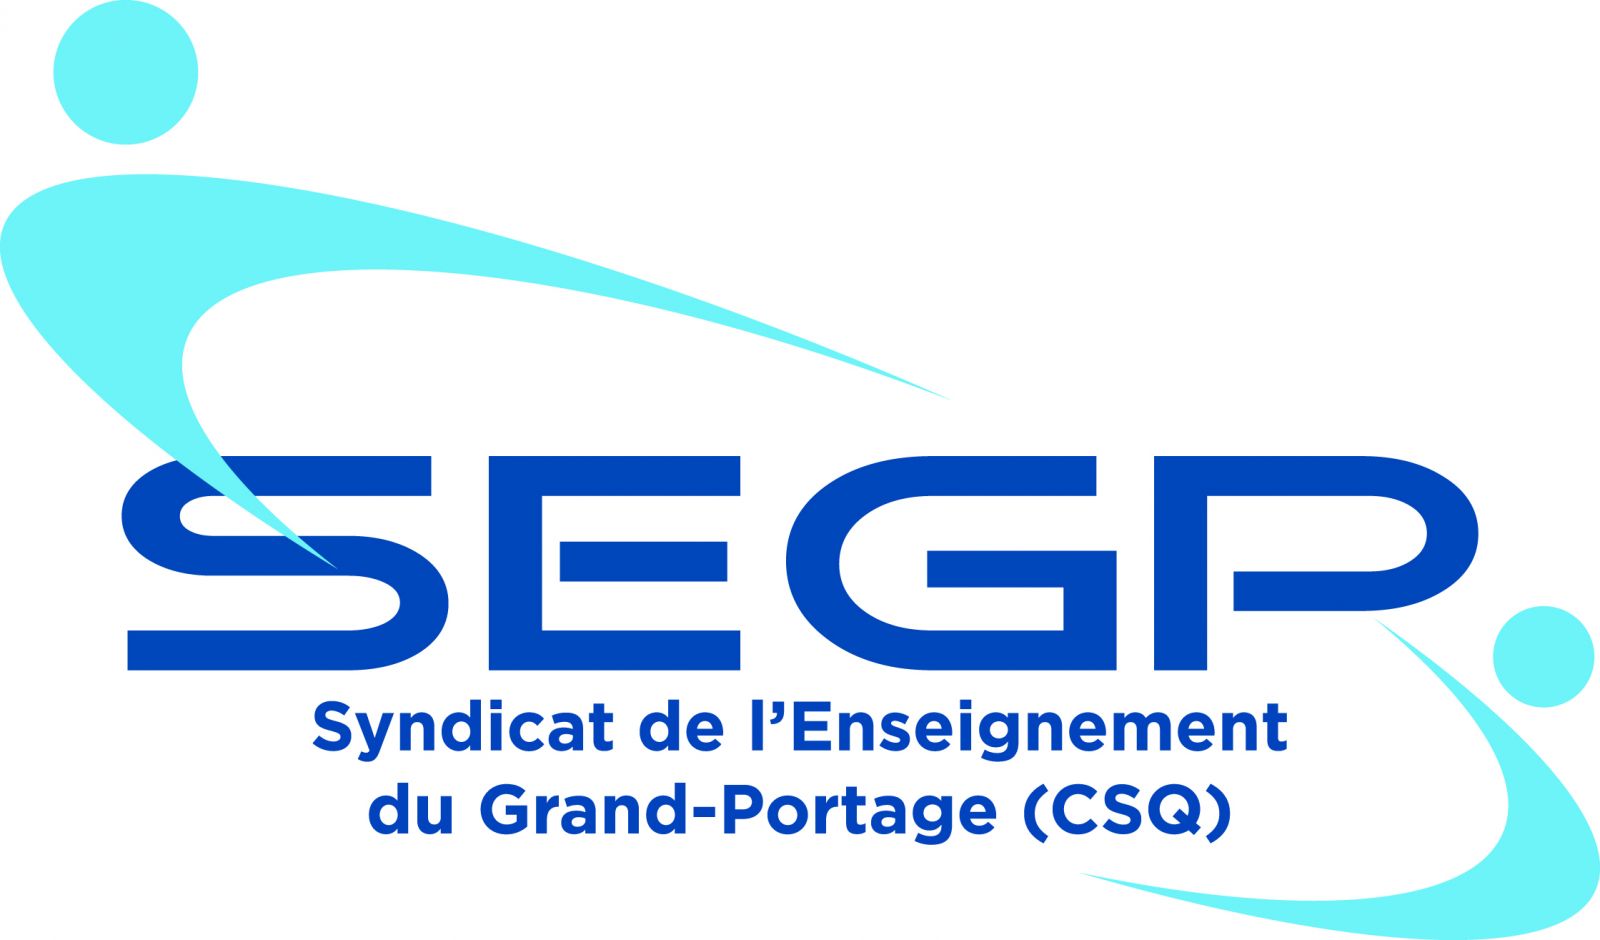 Syndicat de l'enseignement du Grand-Portage (CSQ)